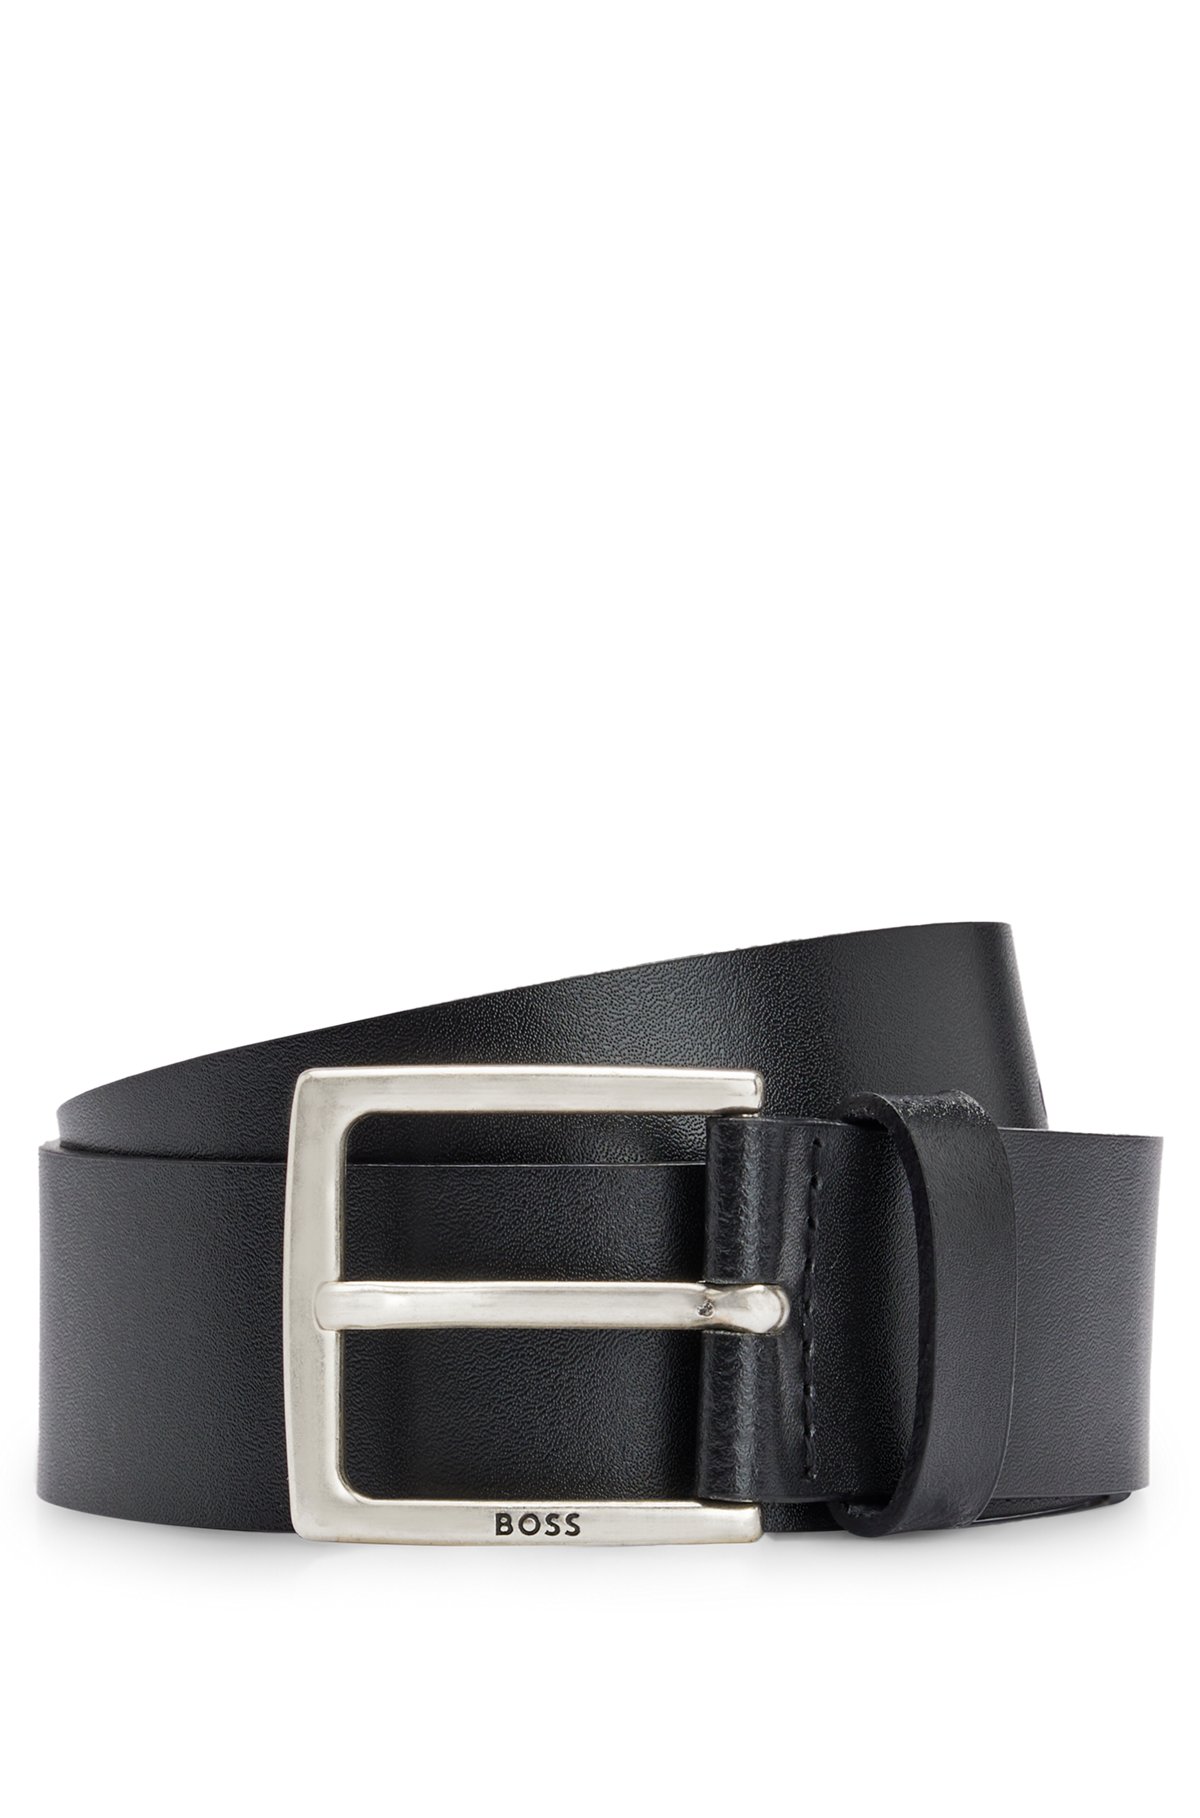 Cinturón de piel italiana con herrajes de efecto metal antiguo, Negro